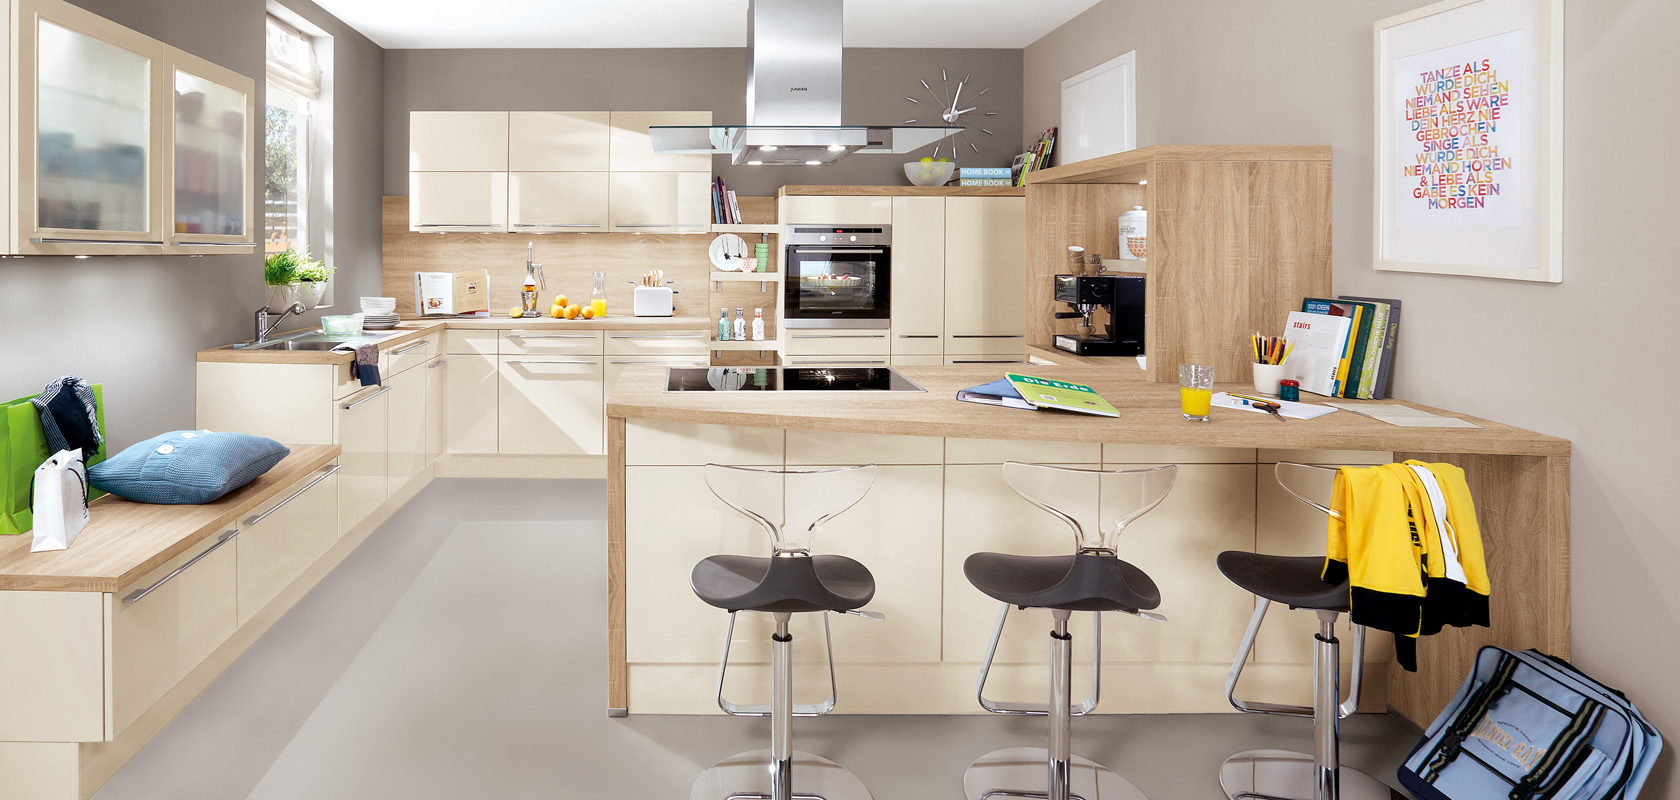 Interni di cucina moderna che mostrano un design elegante con armadi in legno, un'isola centrale, elettrodomestici in acciaio inossidabile e un'area salotto accogliente con sgabelli eleganti.